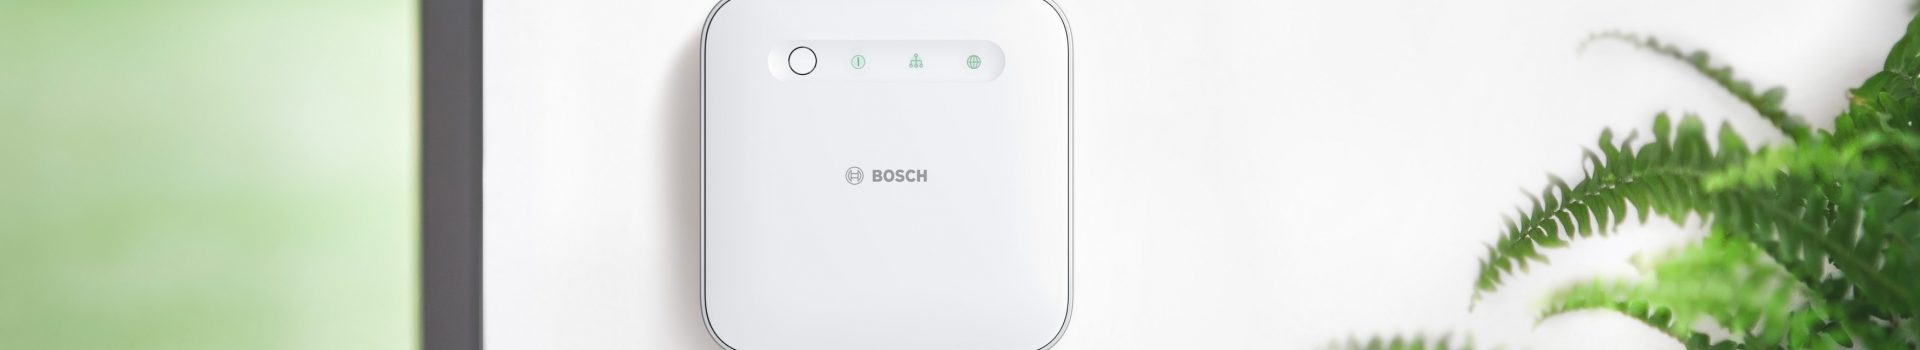 Smart home zentrale von Bosch